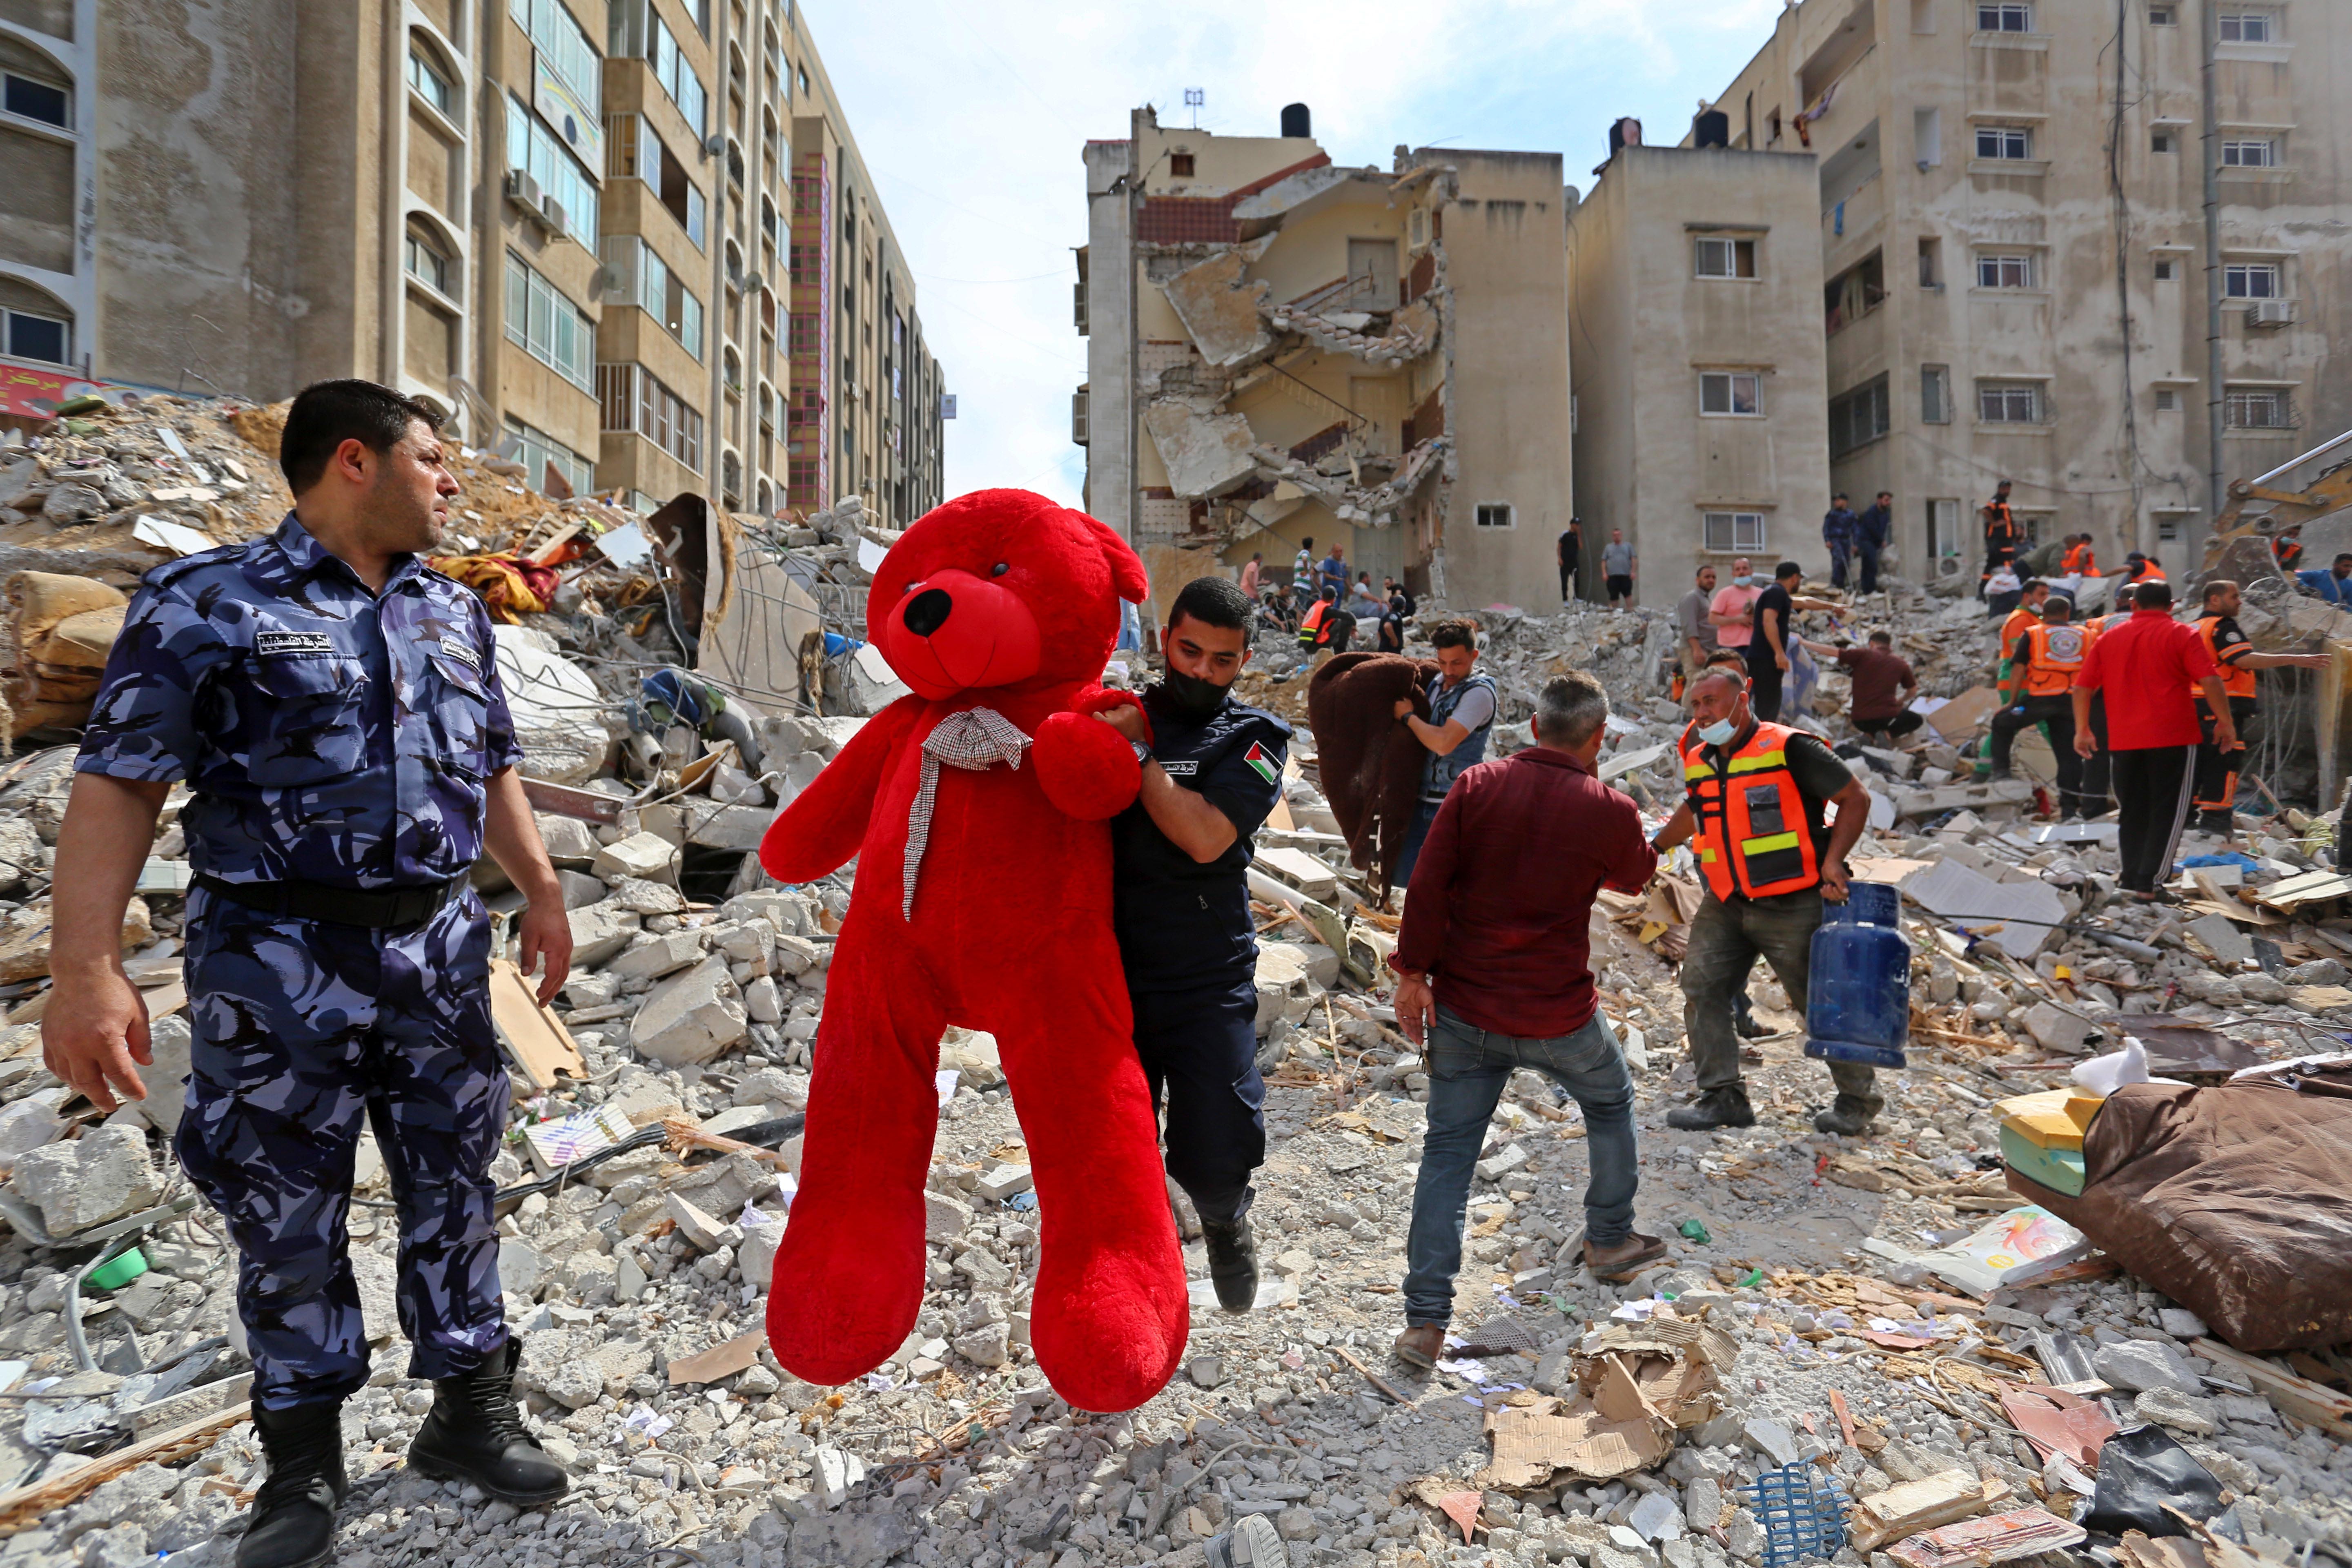 Sebuah boneka teddy bear diangkat oleh tim SAR yang berusaha mencari korban selamat dari serangan udara Israel yang menghantam salah satu apartemen di Gaza. Foto oleh: Ashraf Amra/Anadolu Agency via Getty Images